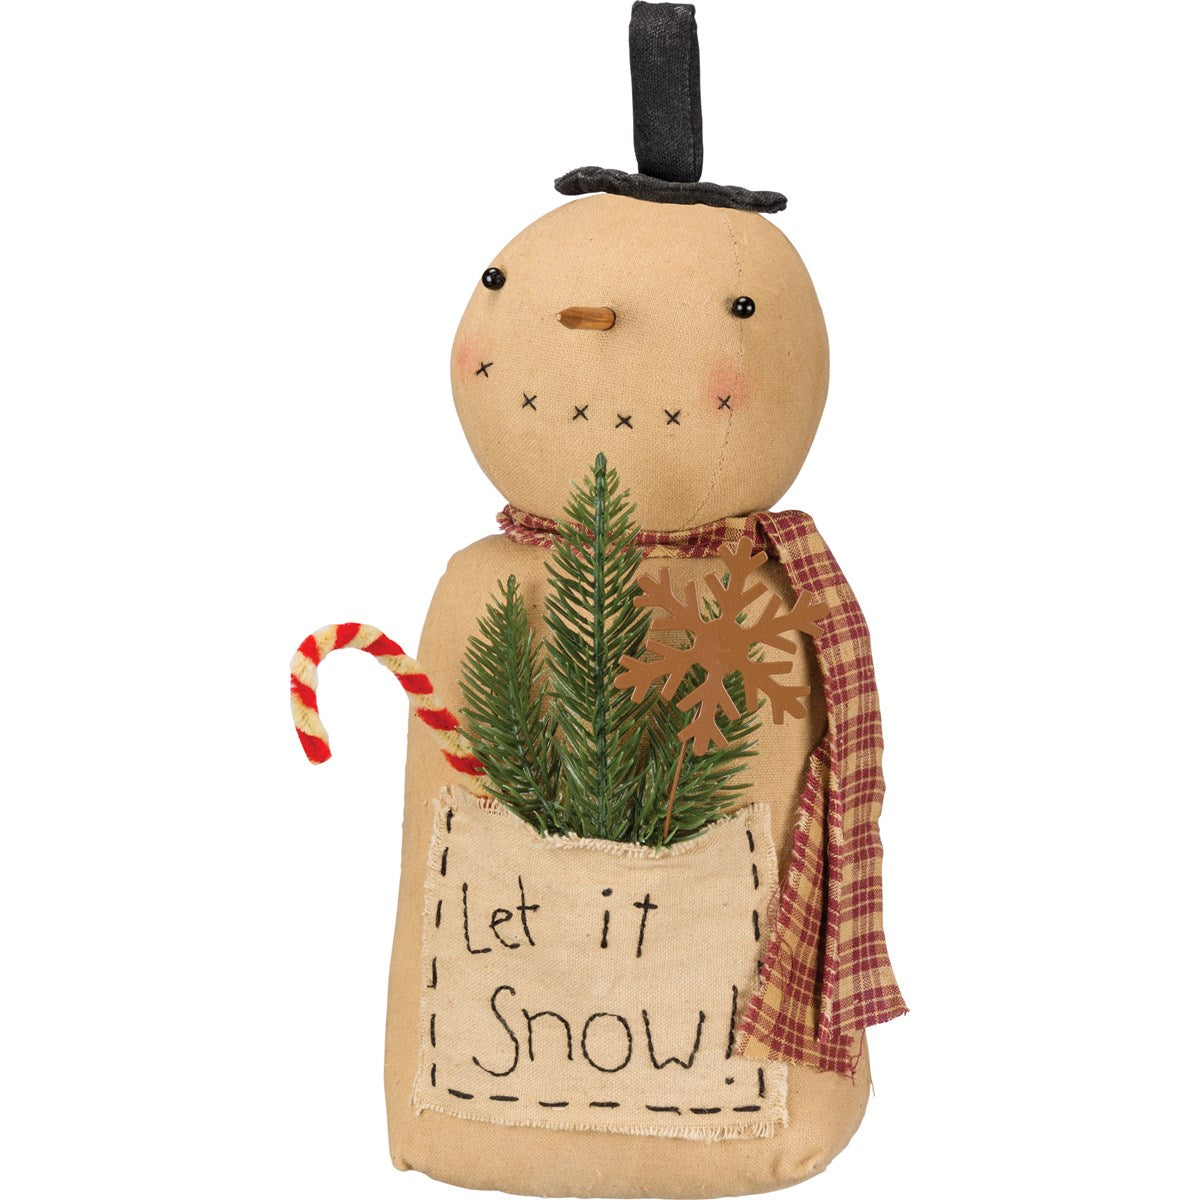 Primitive Christmas Let it Snow Stump Snowman Doll